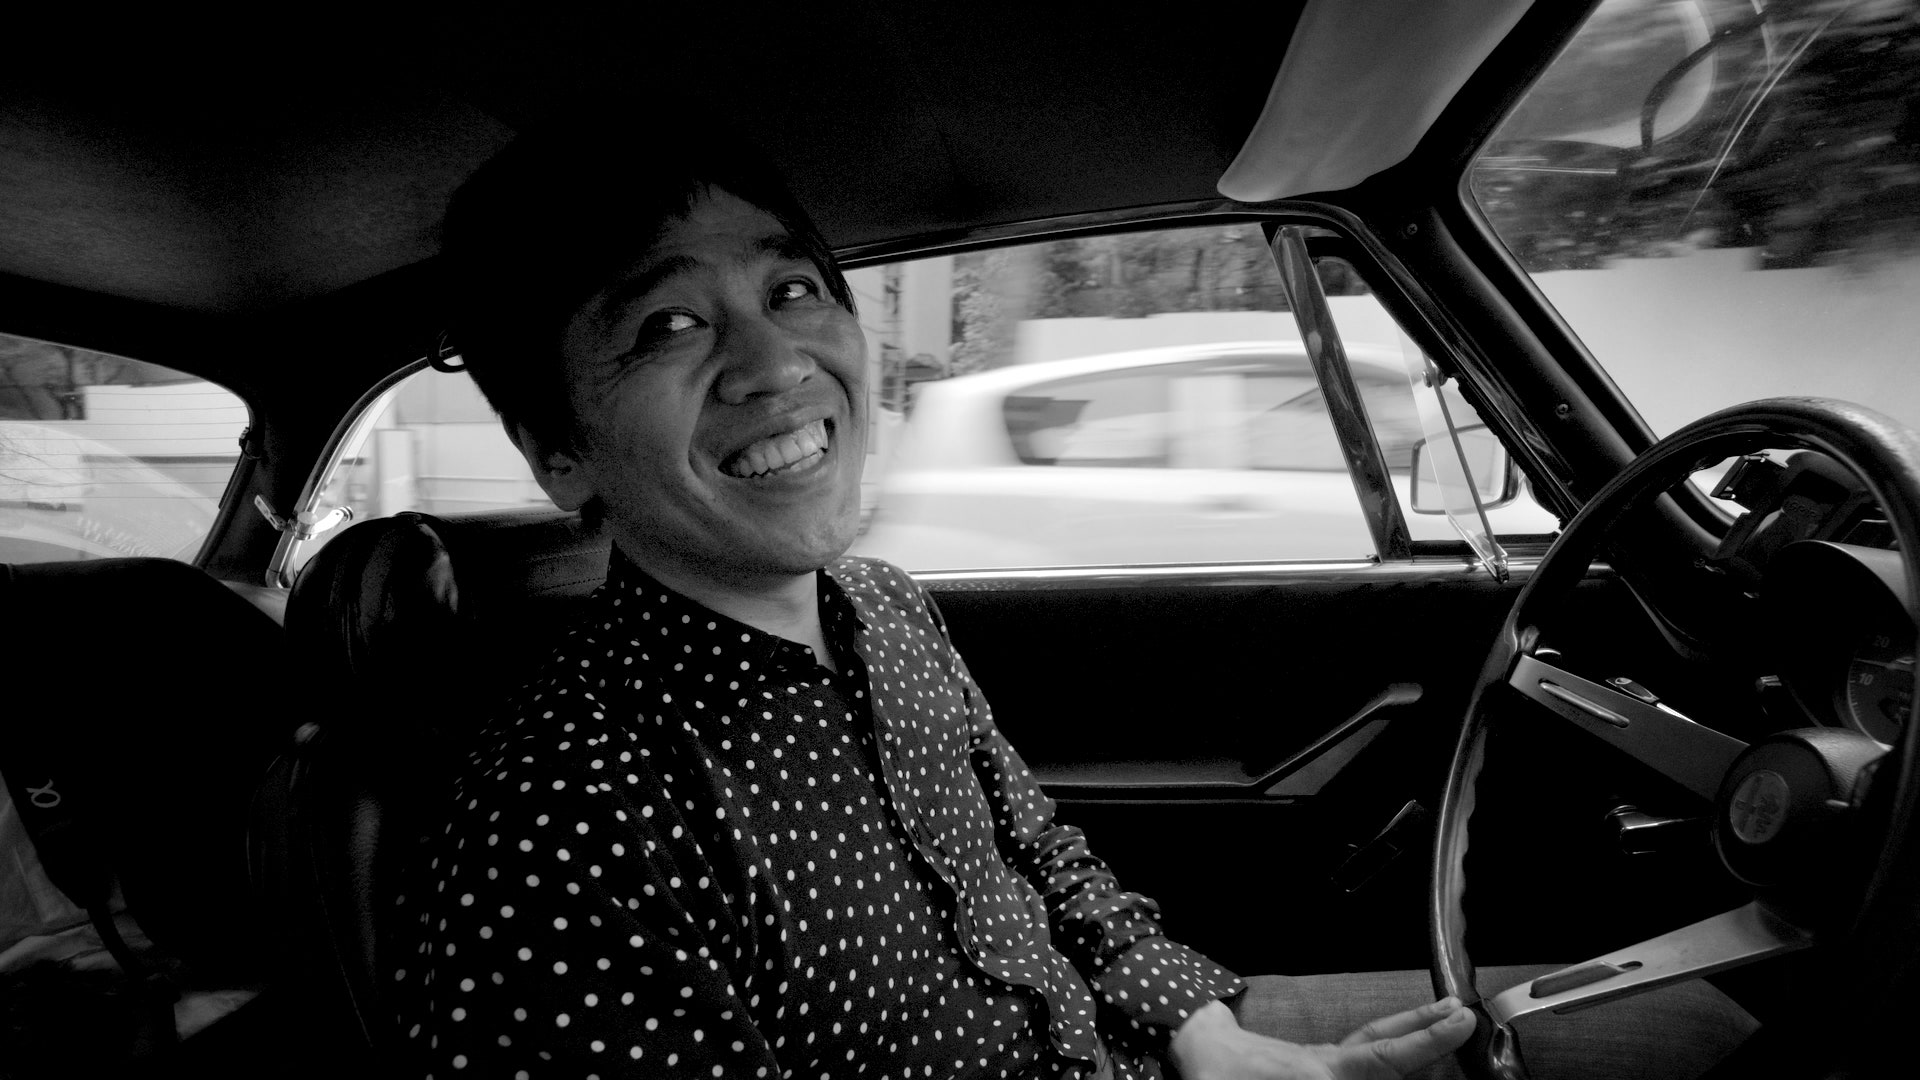 “Поездка в Токио” как снимали роудмуви с притцкеровским лауреатом Рюэ Нисидзавой